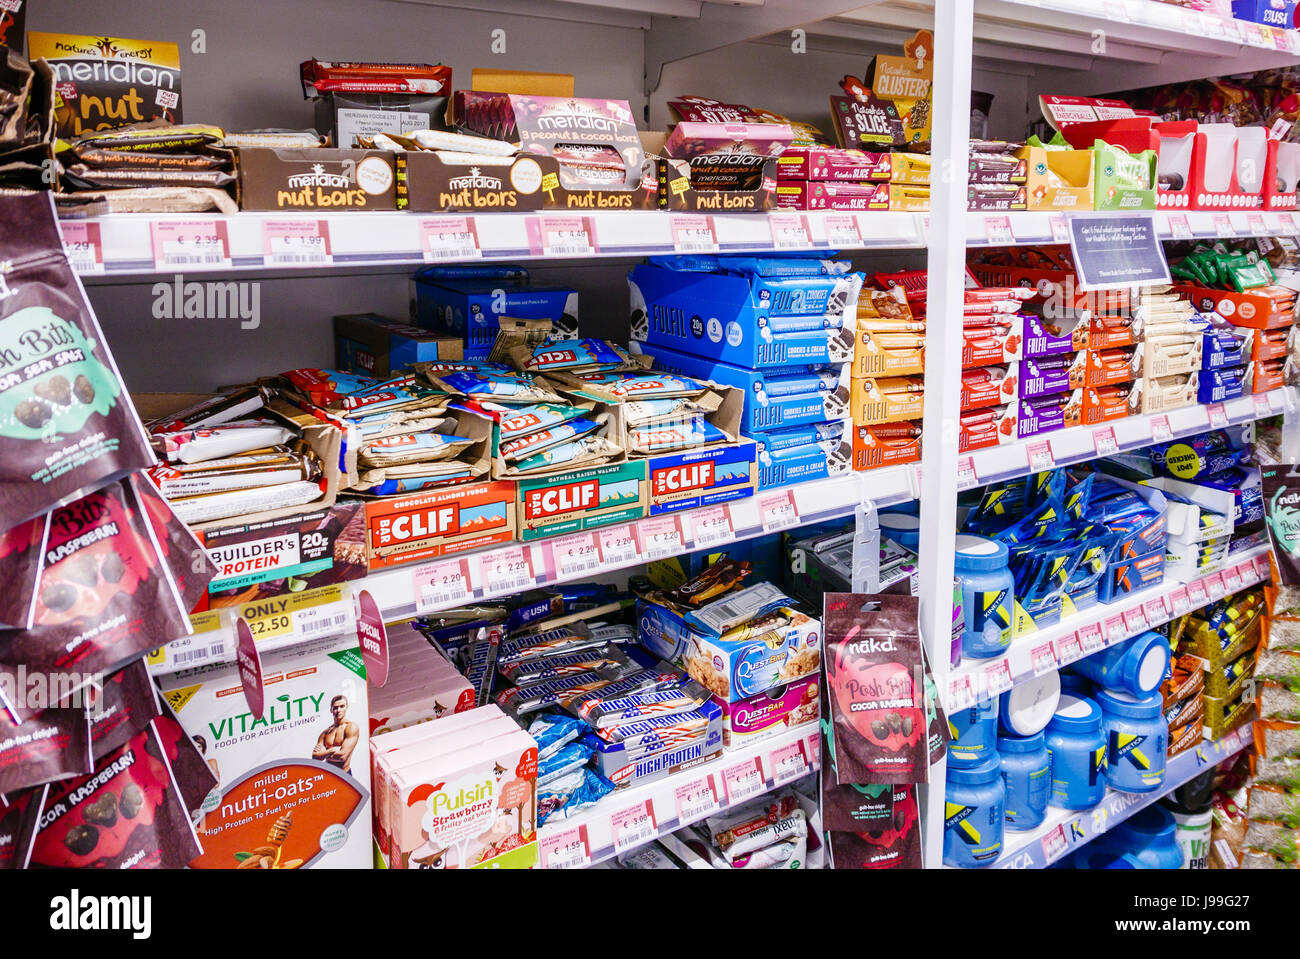 Des étagères dans un supermarché rempli de bars de l'écrou, barres énergétiques, barres, barres protéinées d'avoine et d'autres produits de santé. Banque D'Images